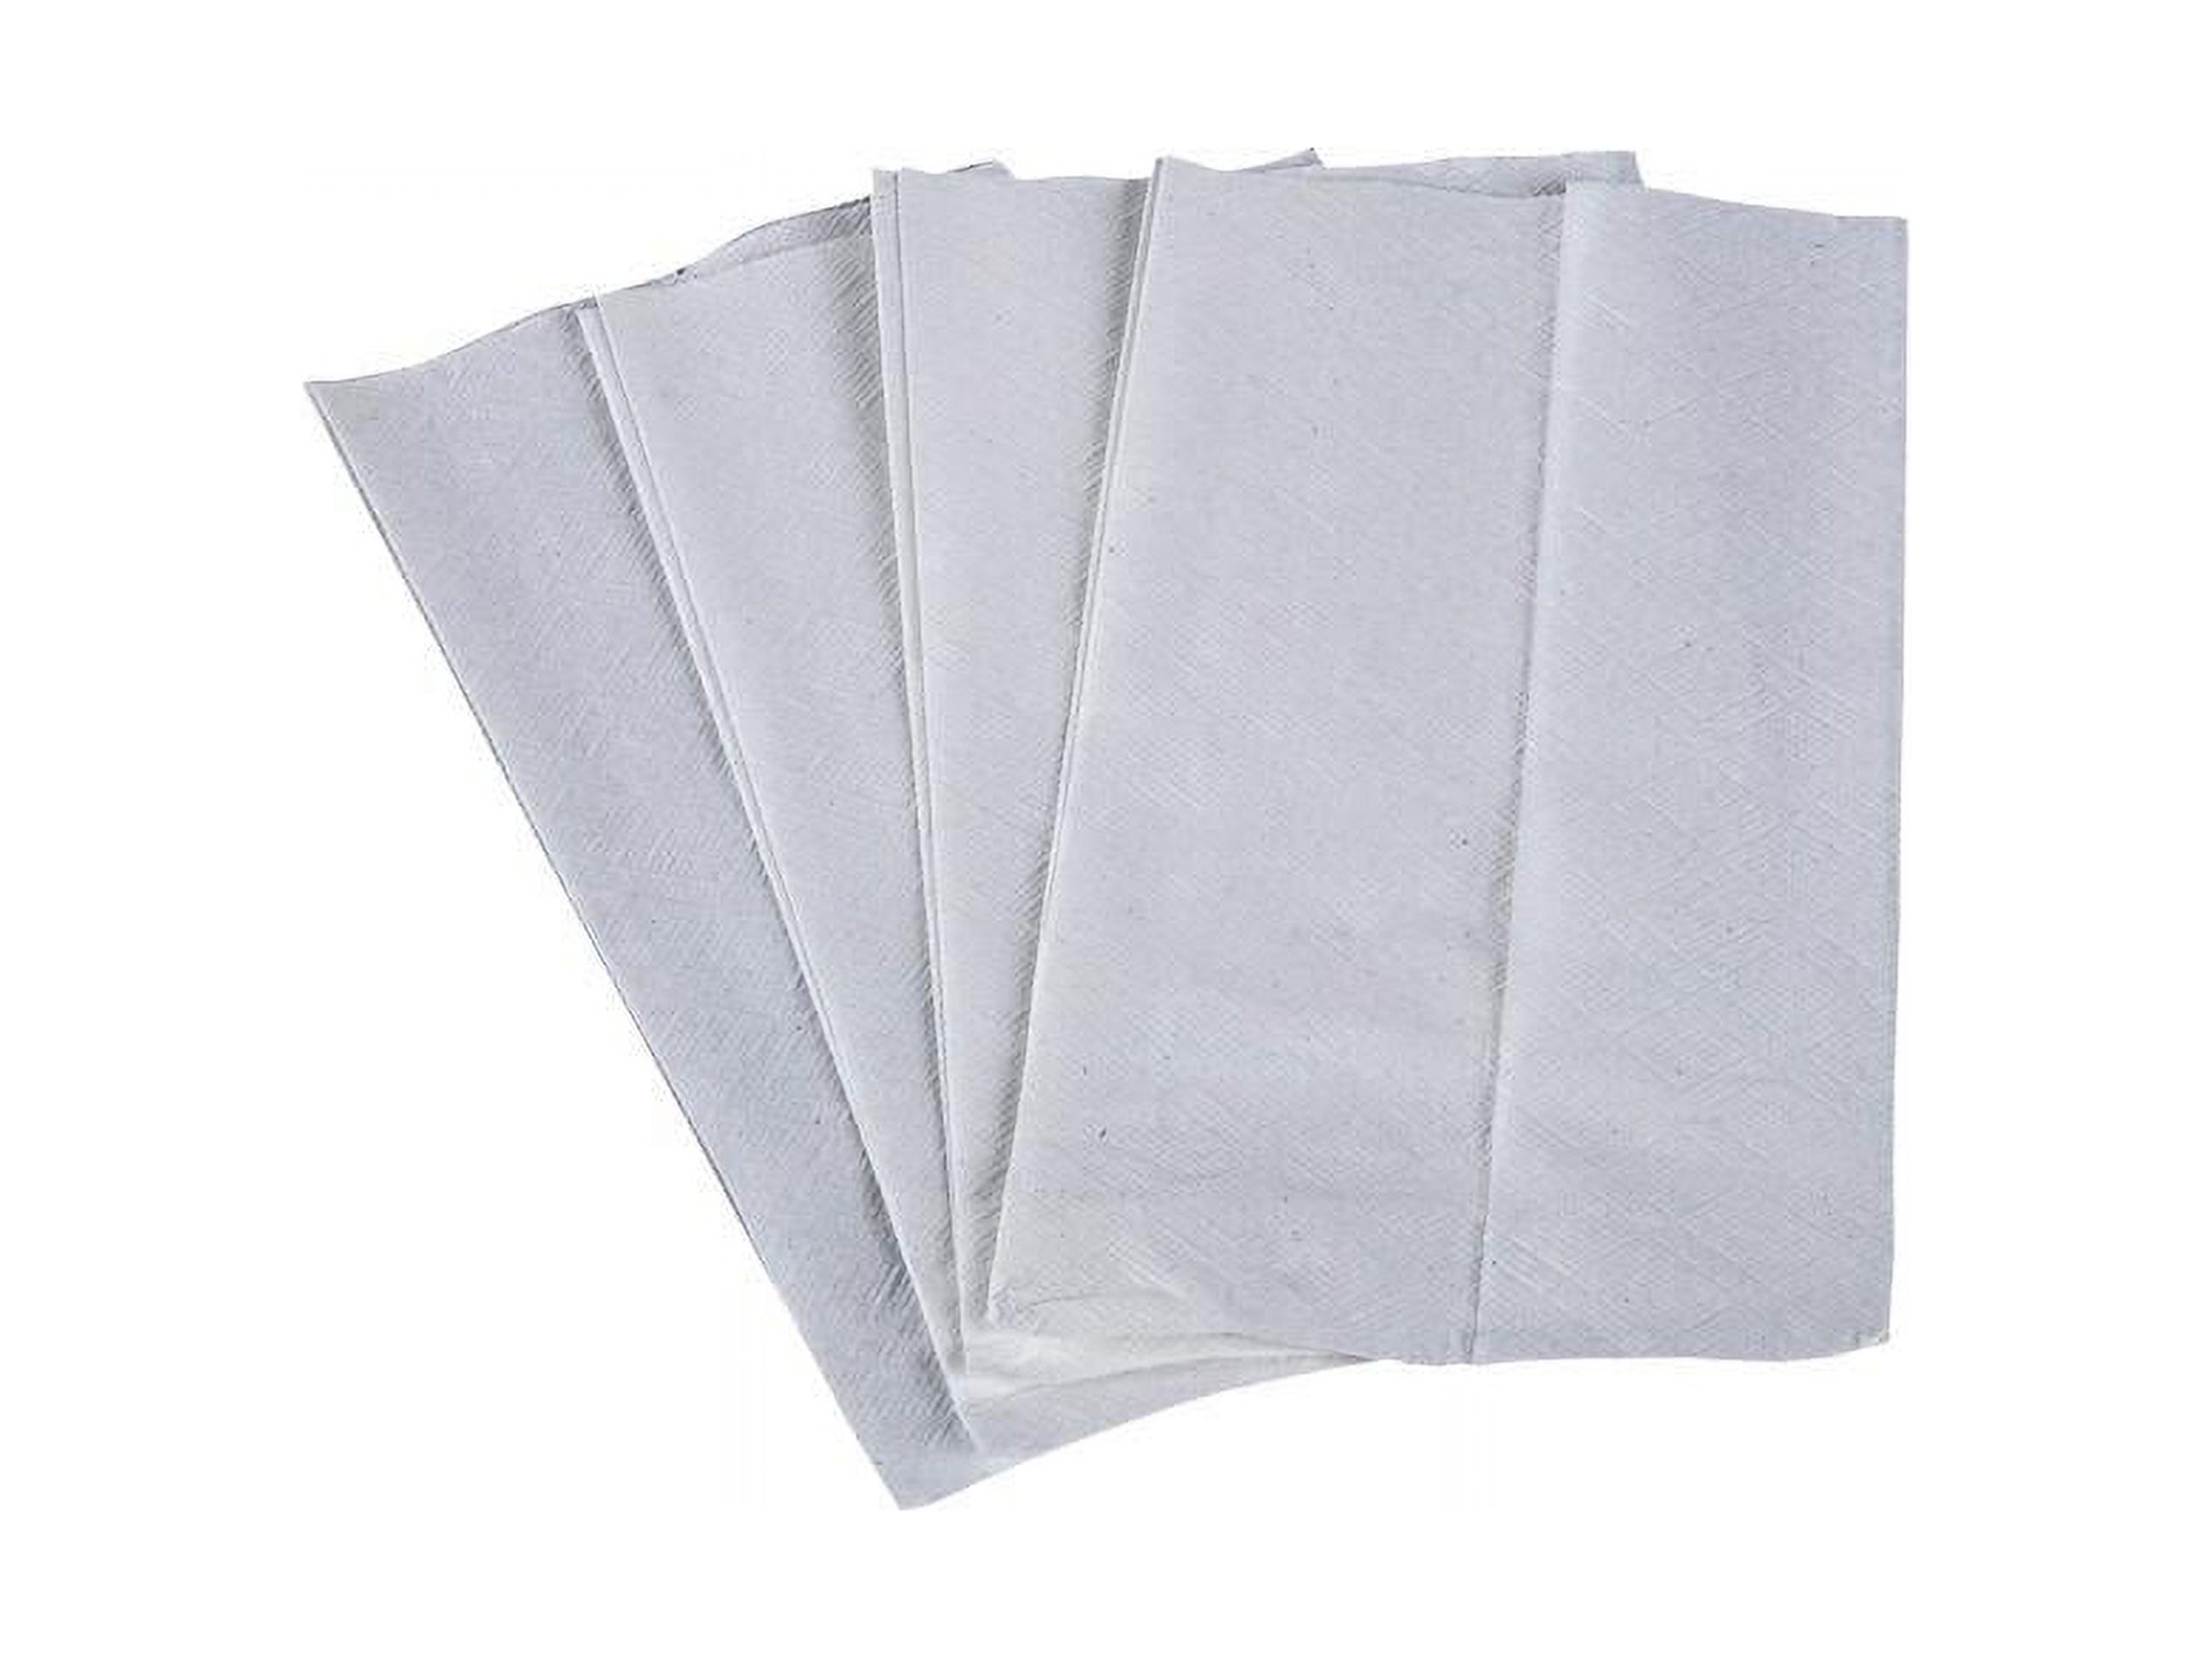 Scott Paper Dinner Napkins (98740), Disposable, White, 1per8 Fold, 1-Ply, 12 x 13 (Unfolded), 12 Packs of 500 Dinner Napkins (6,000 per Case) - image 1 of 4